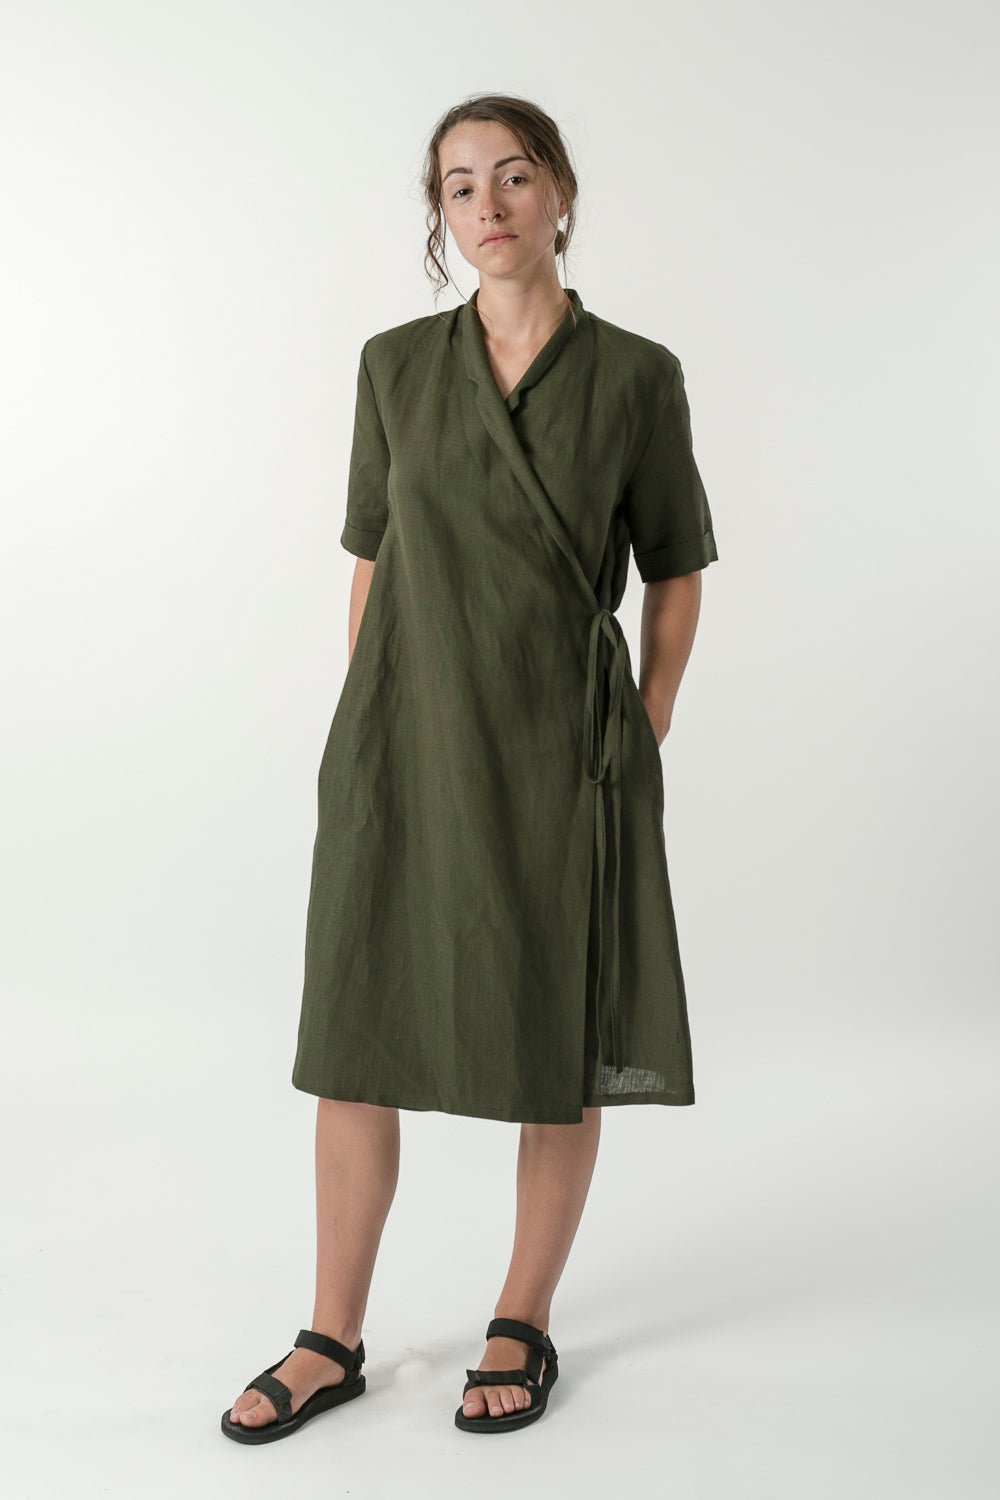 Hemp Linen Short Sleeve Wrap Dress - Ensemble Studios